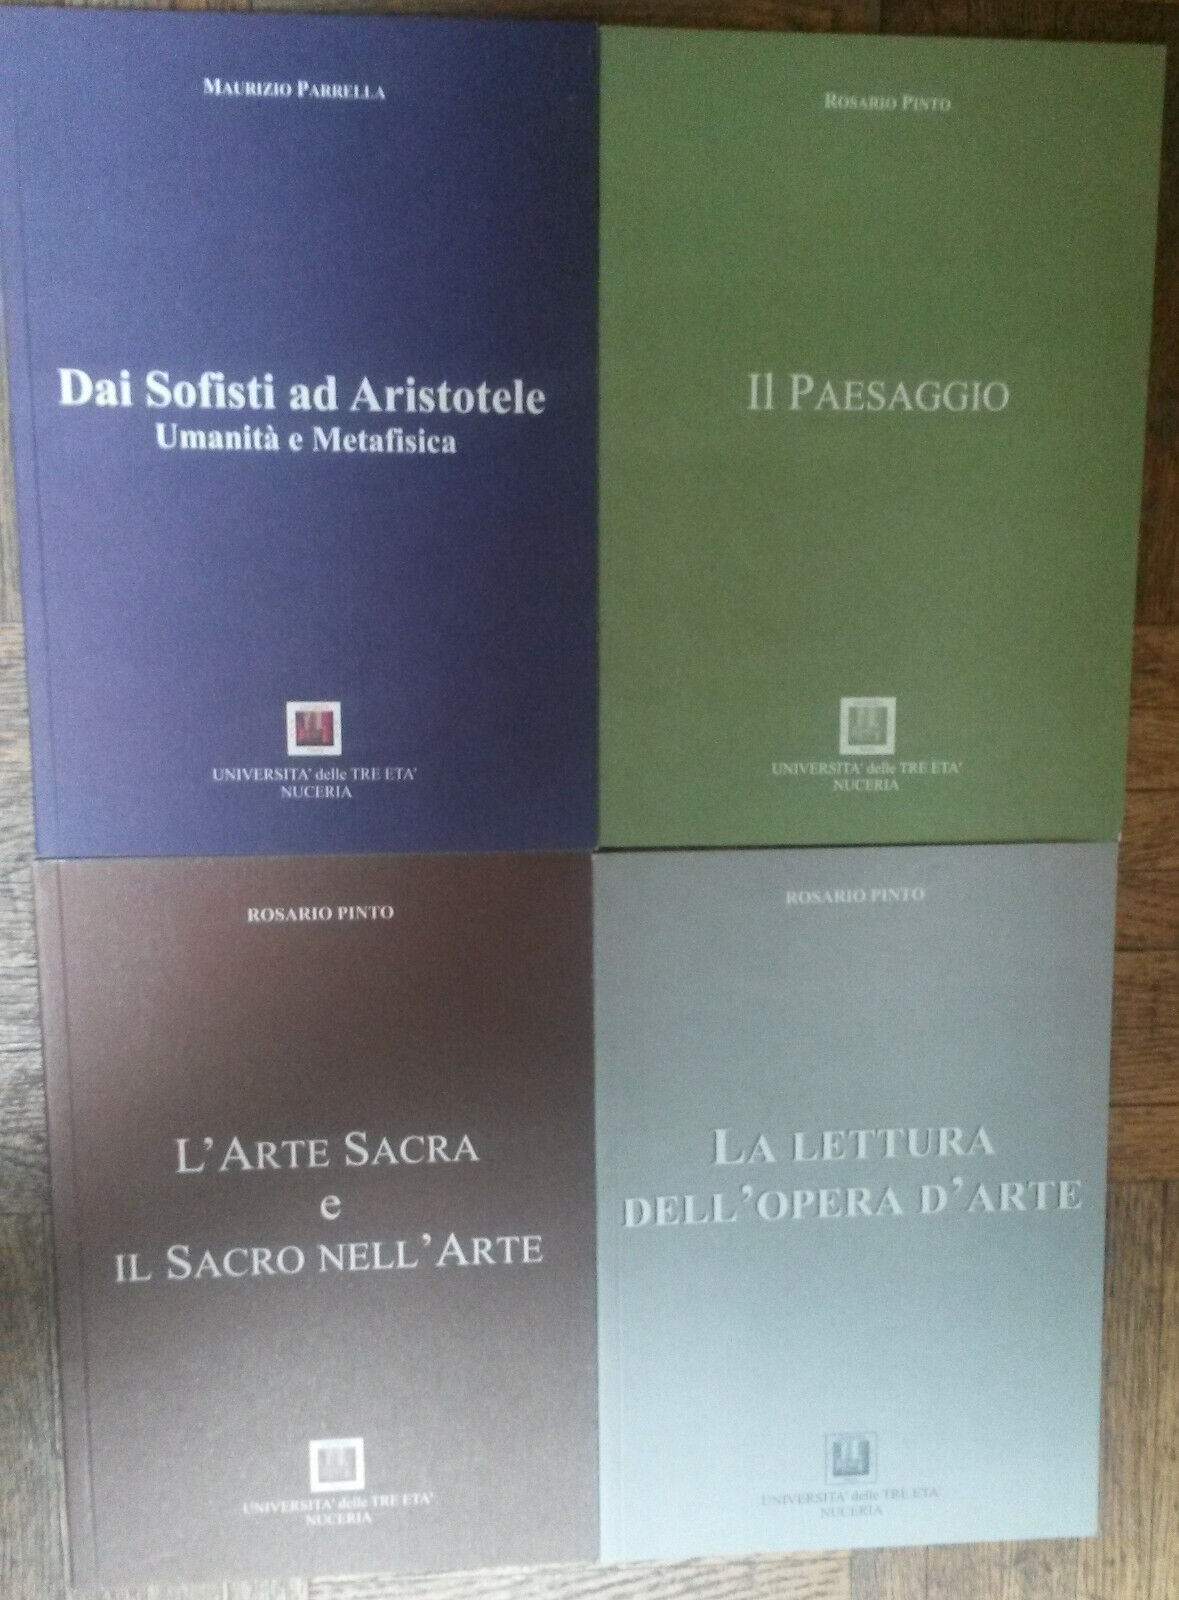 Lotto UTE-NUCERIA di4 libri-Rosario Pinto,Maurizio Parrella-Diaconia,Print Art-R